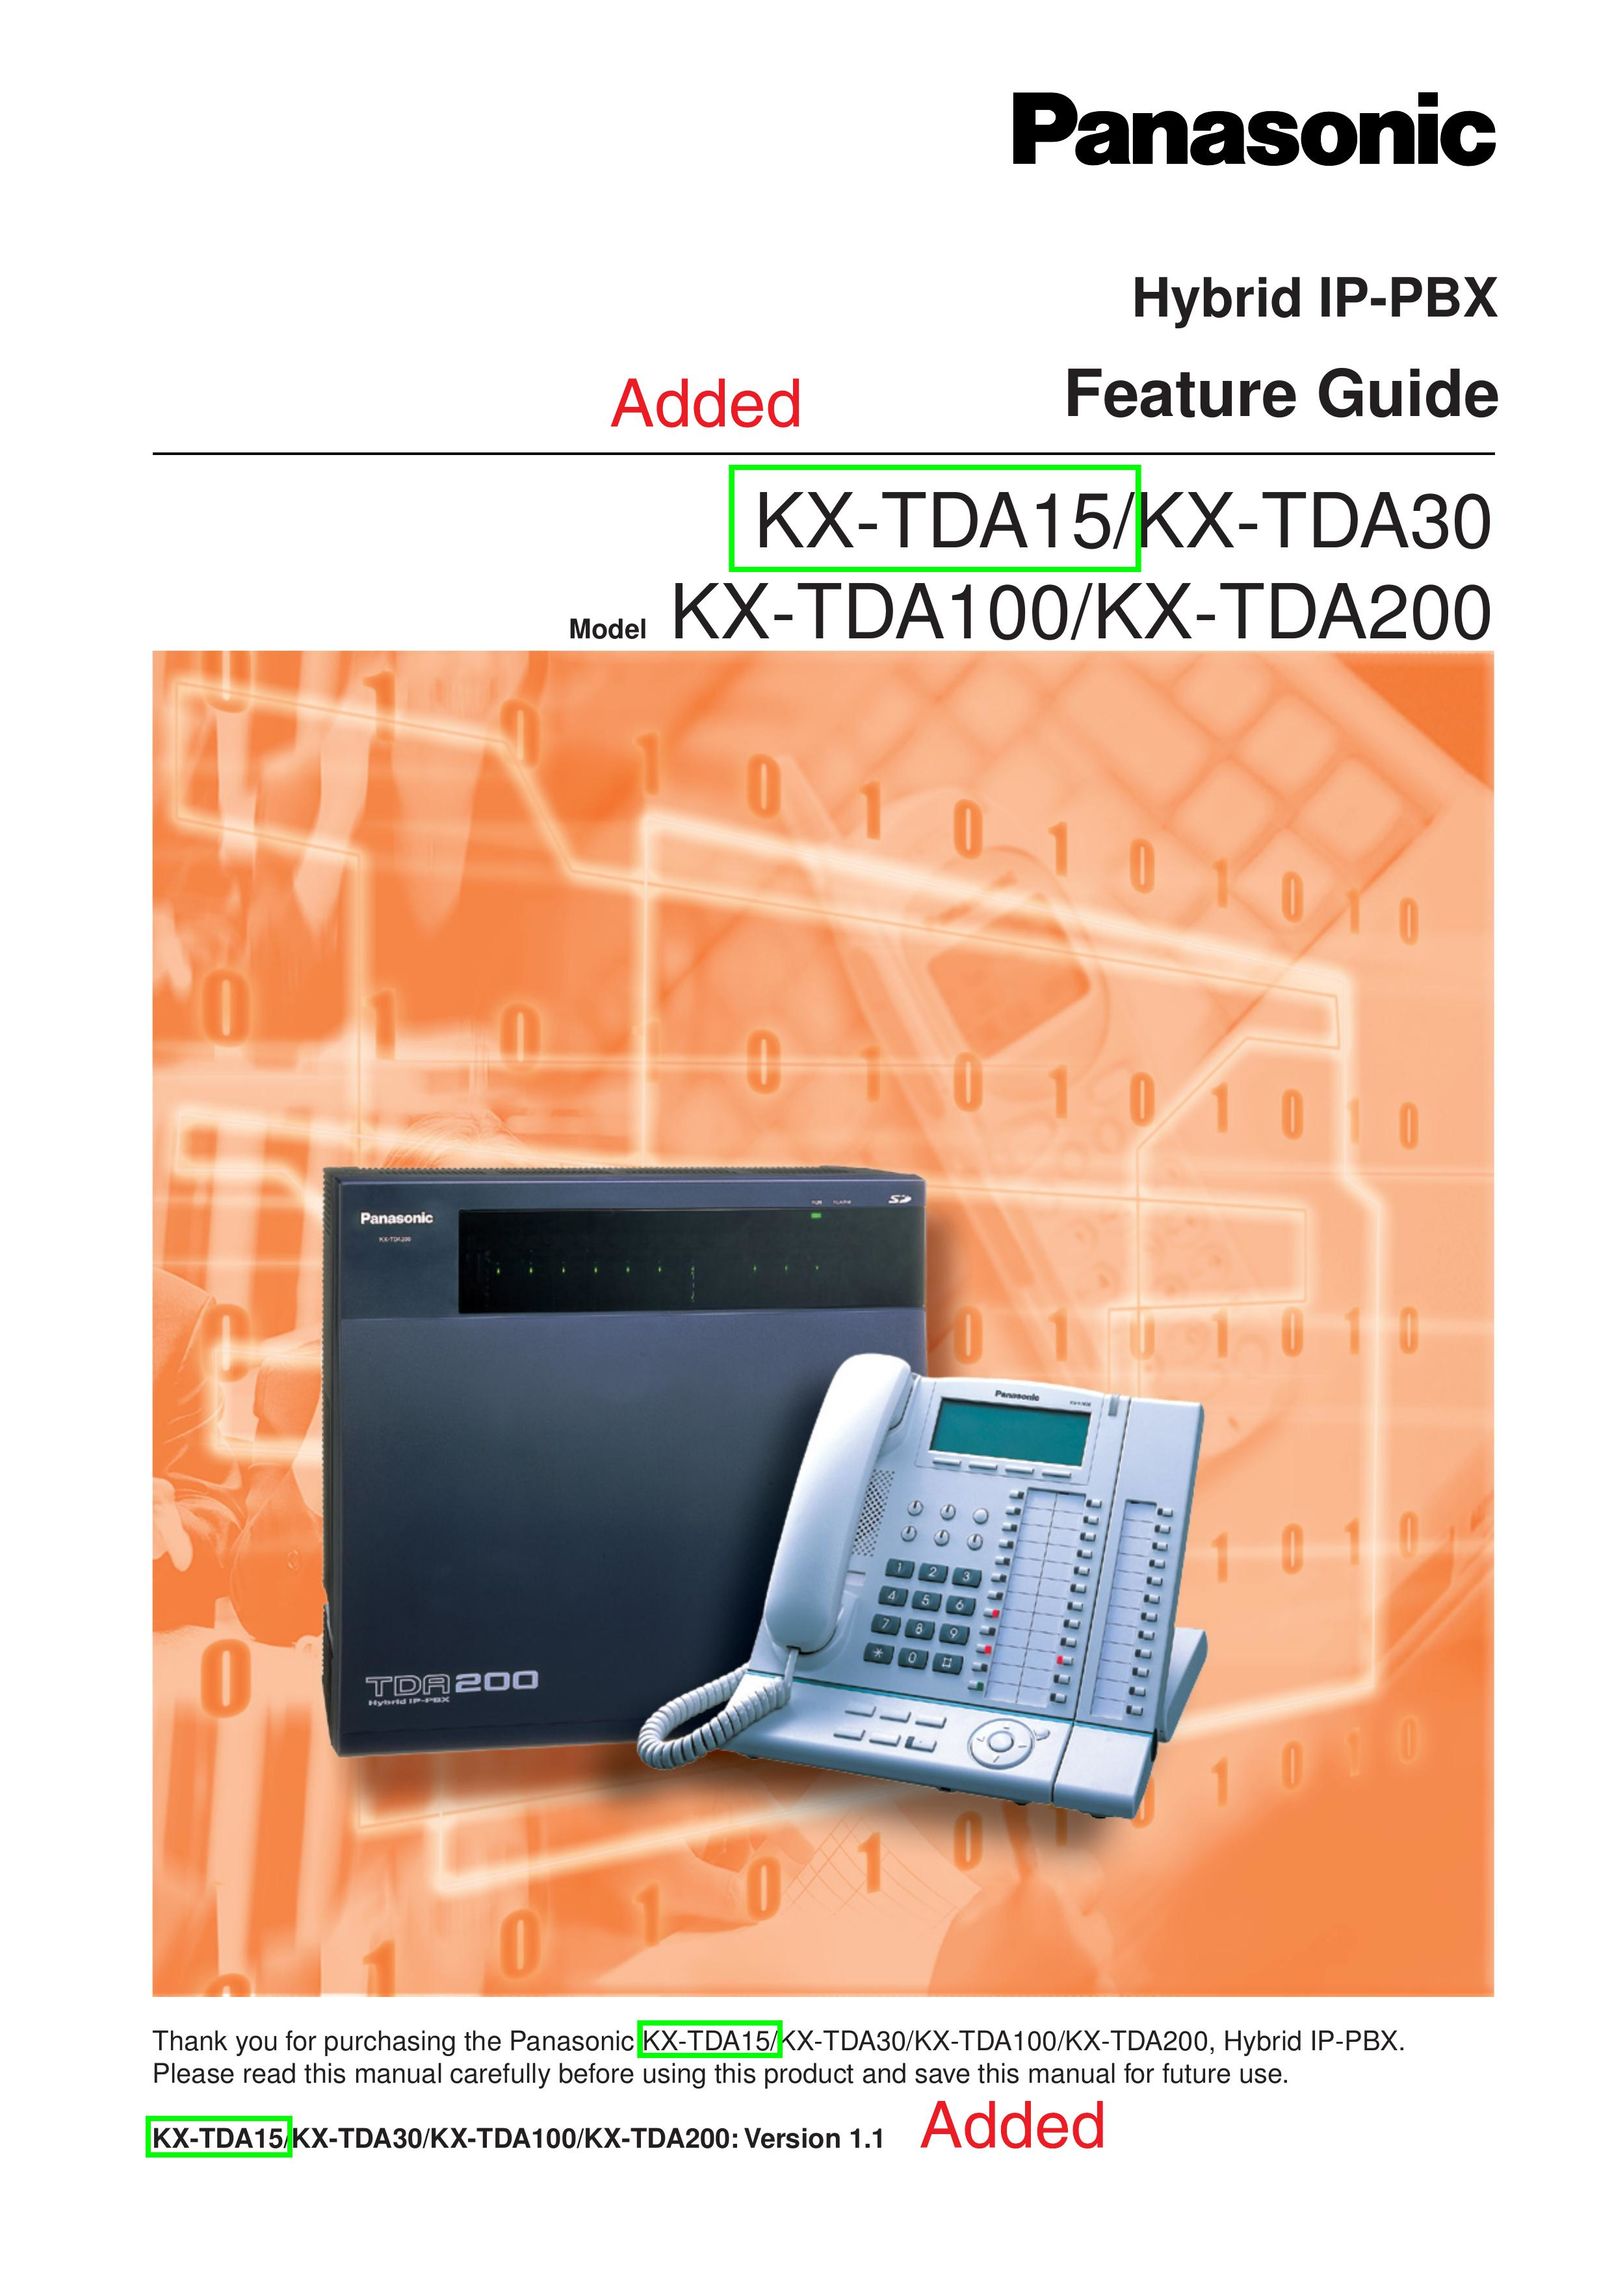 Peerless Industries KX-TDA15 IP Phone User Manual